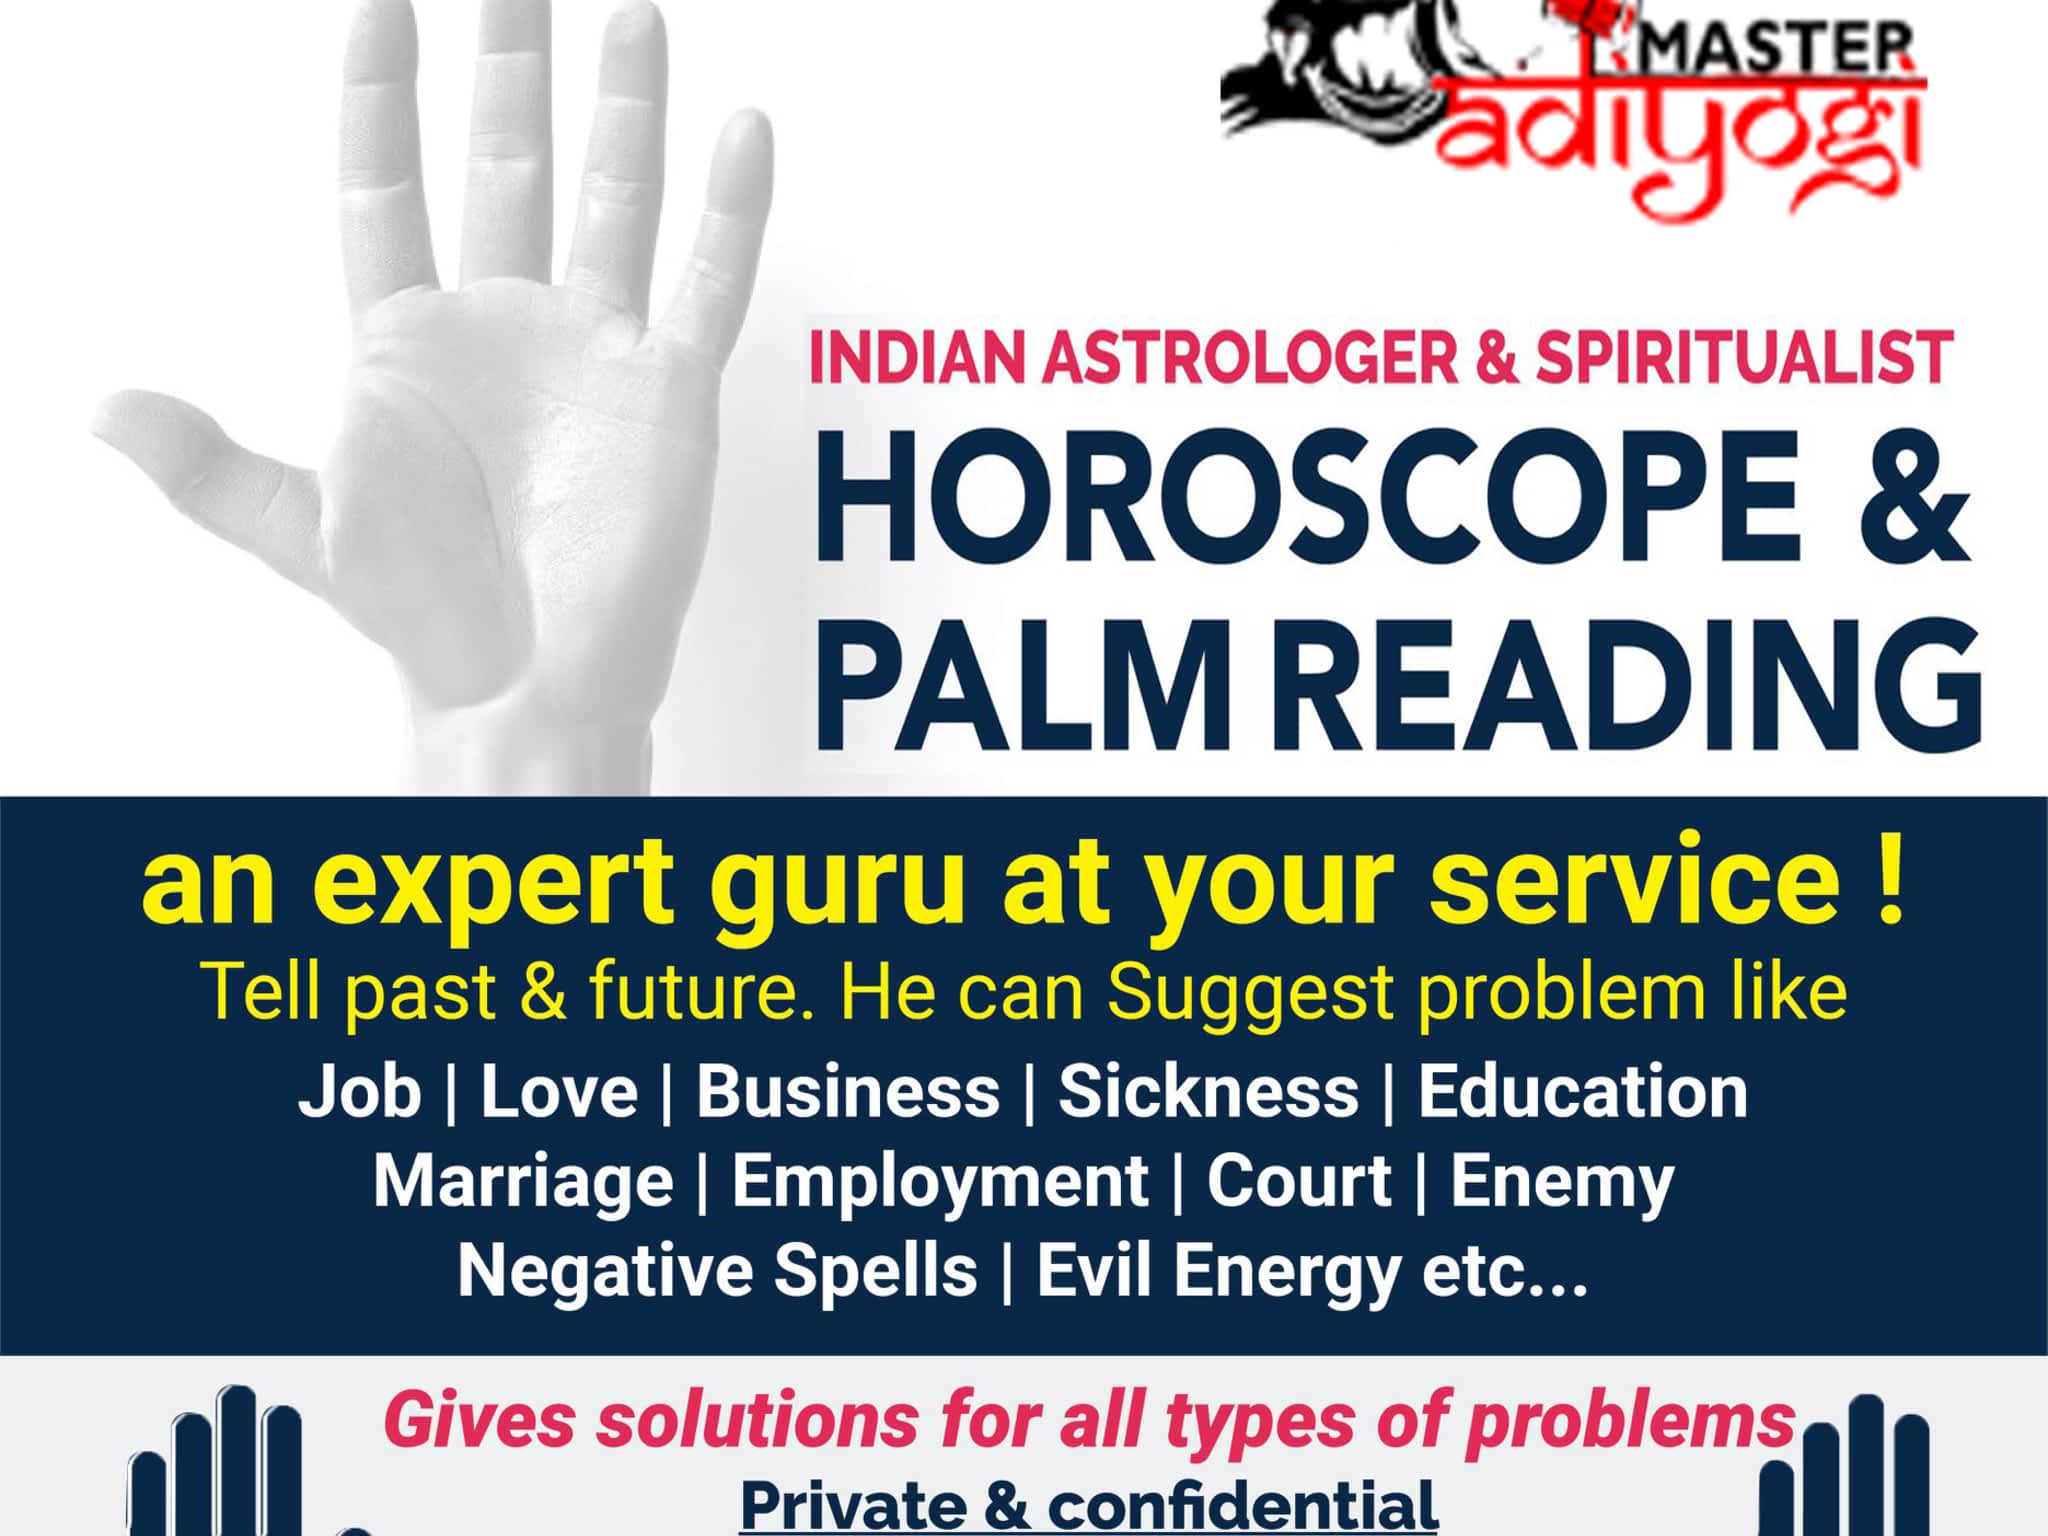 photo Best & Leading Astrologer and Psychic Adiyogi